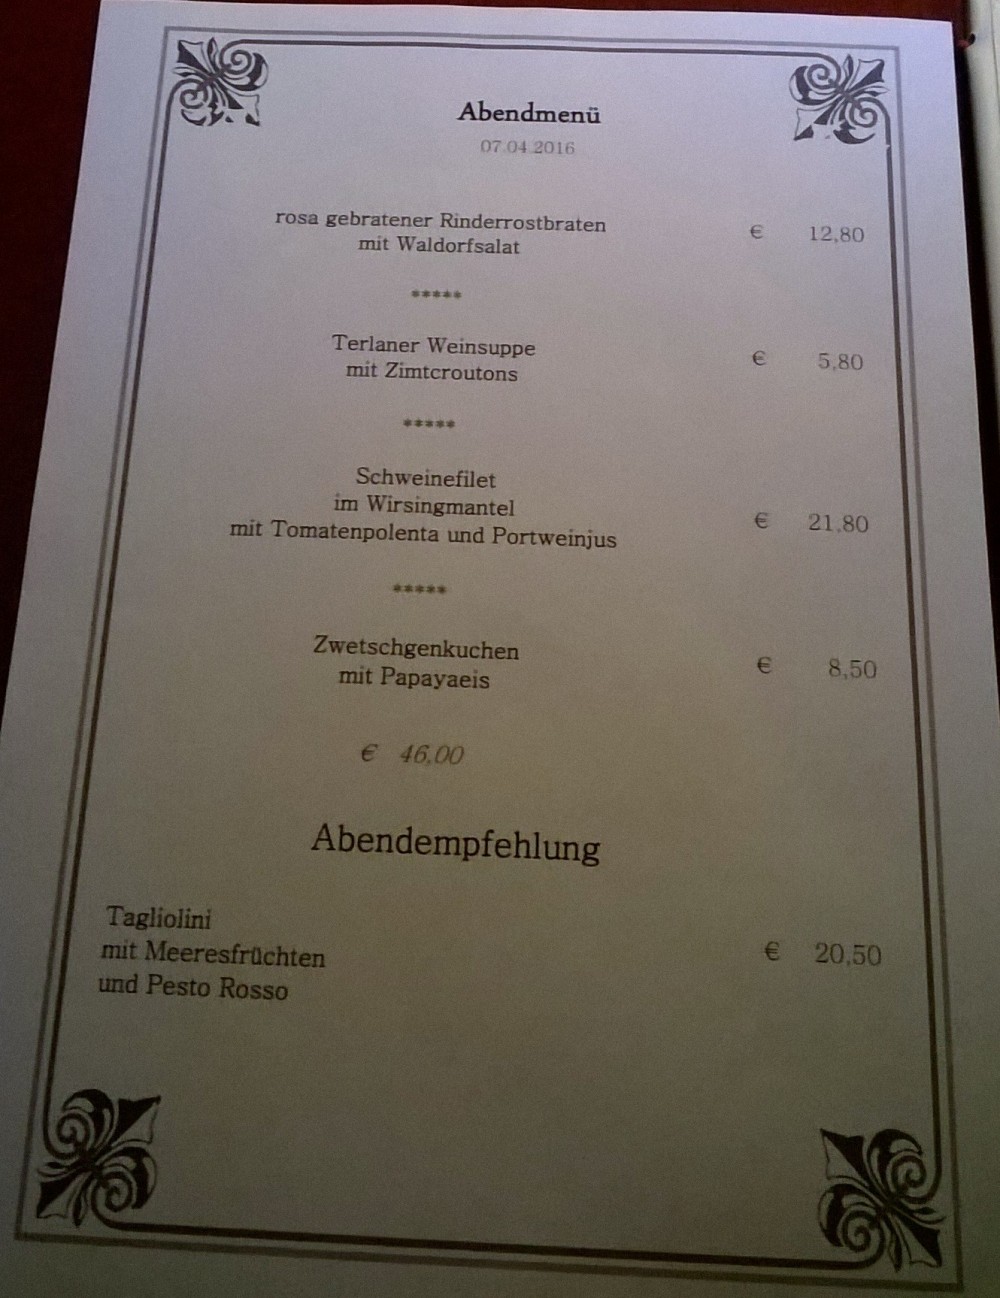 Restaurant Hotel Omesberg - Lech